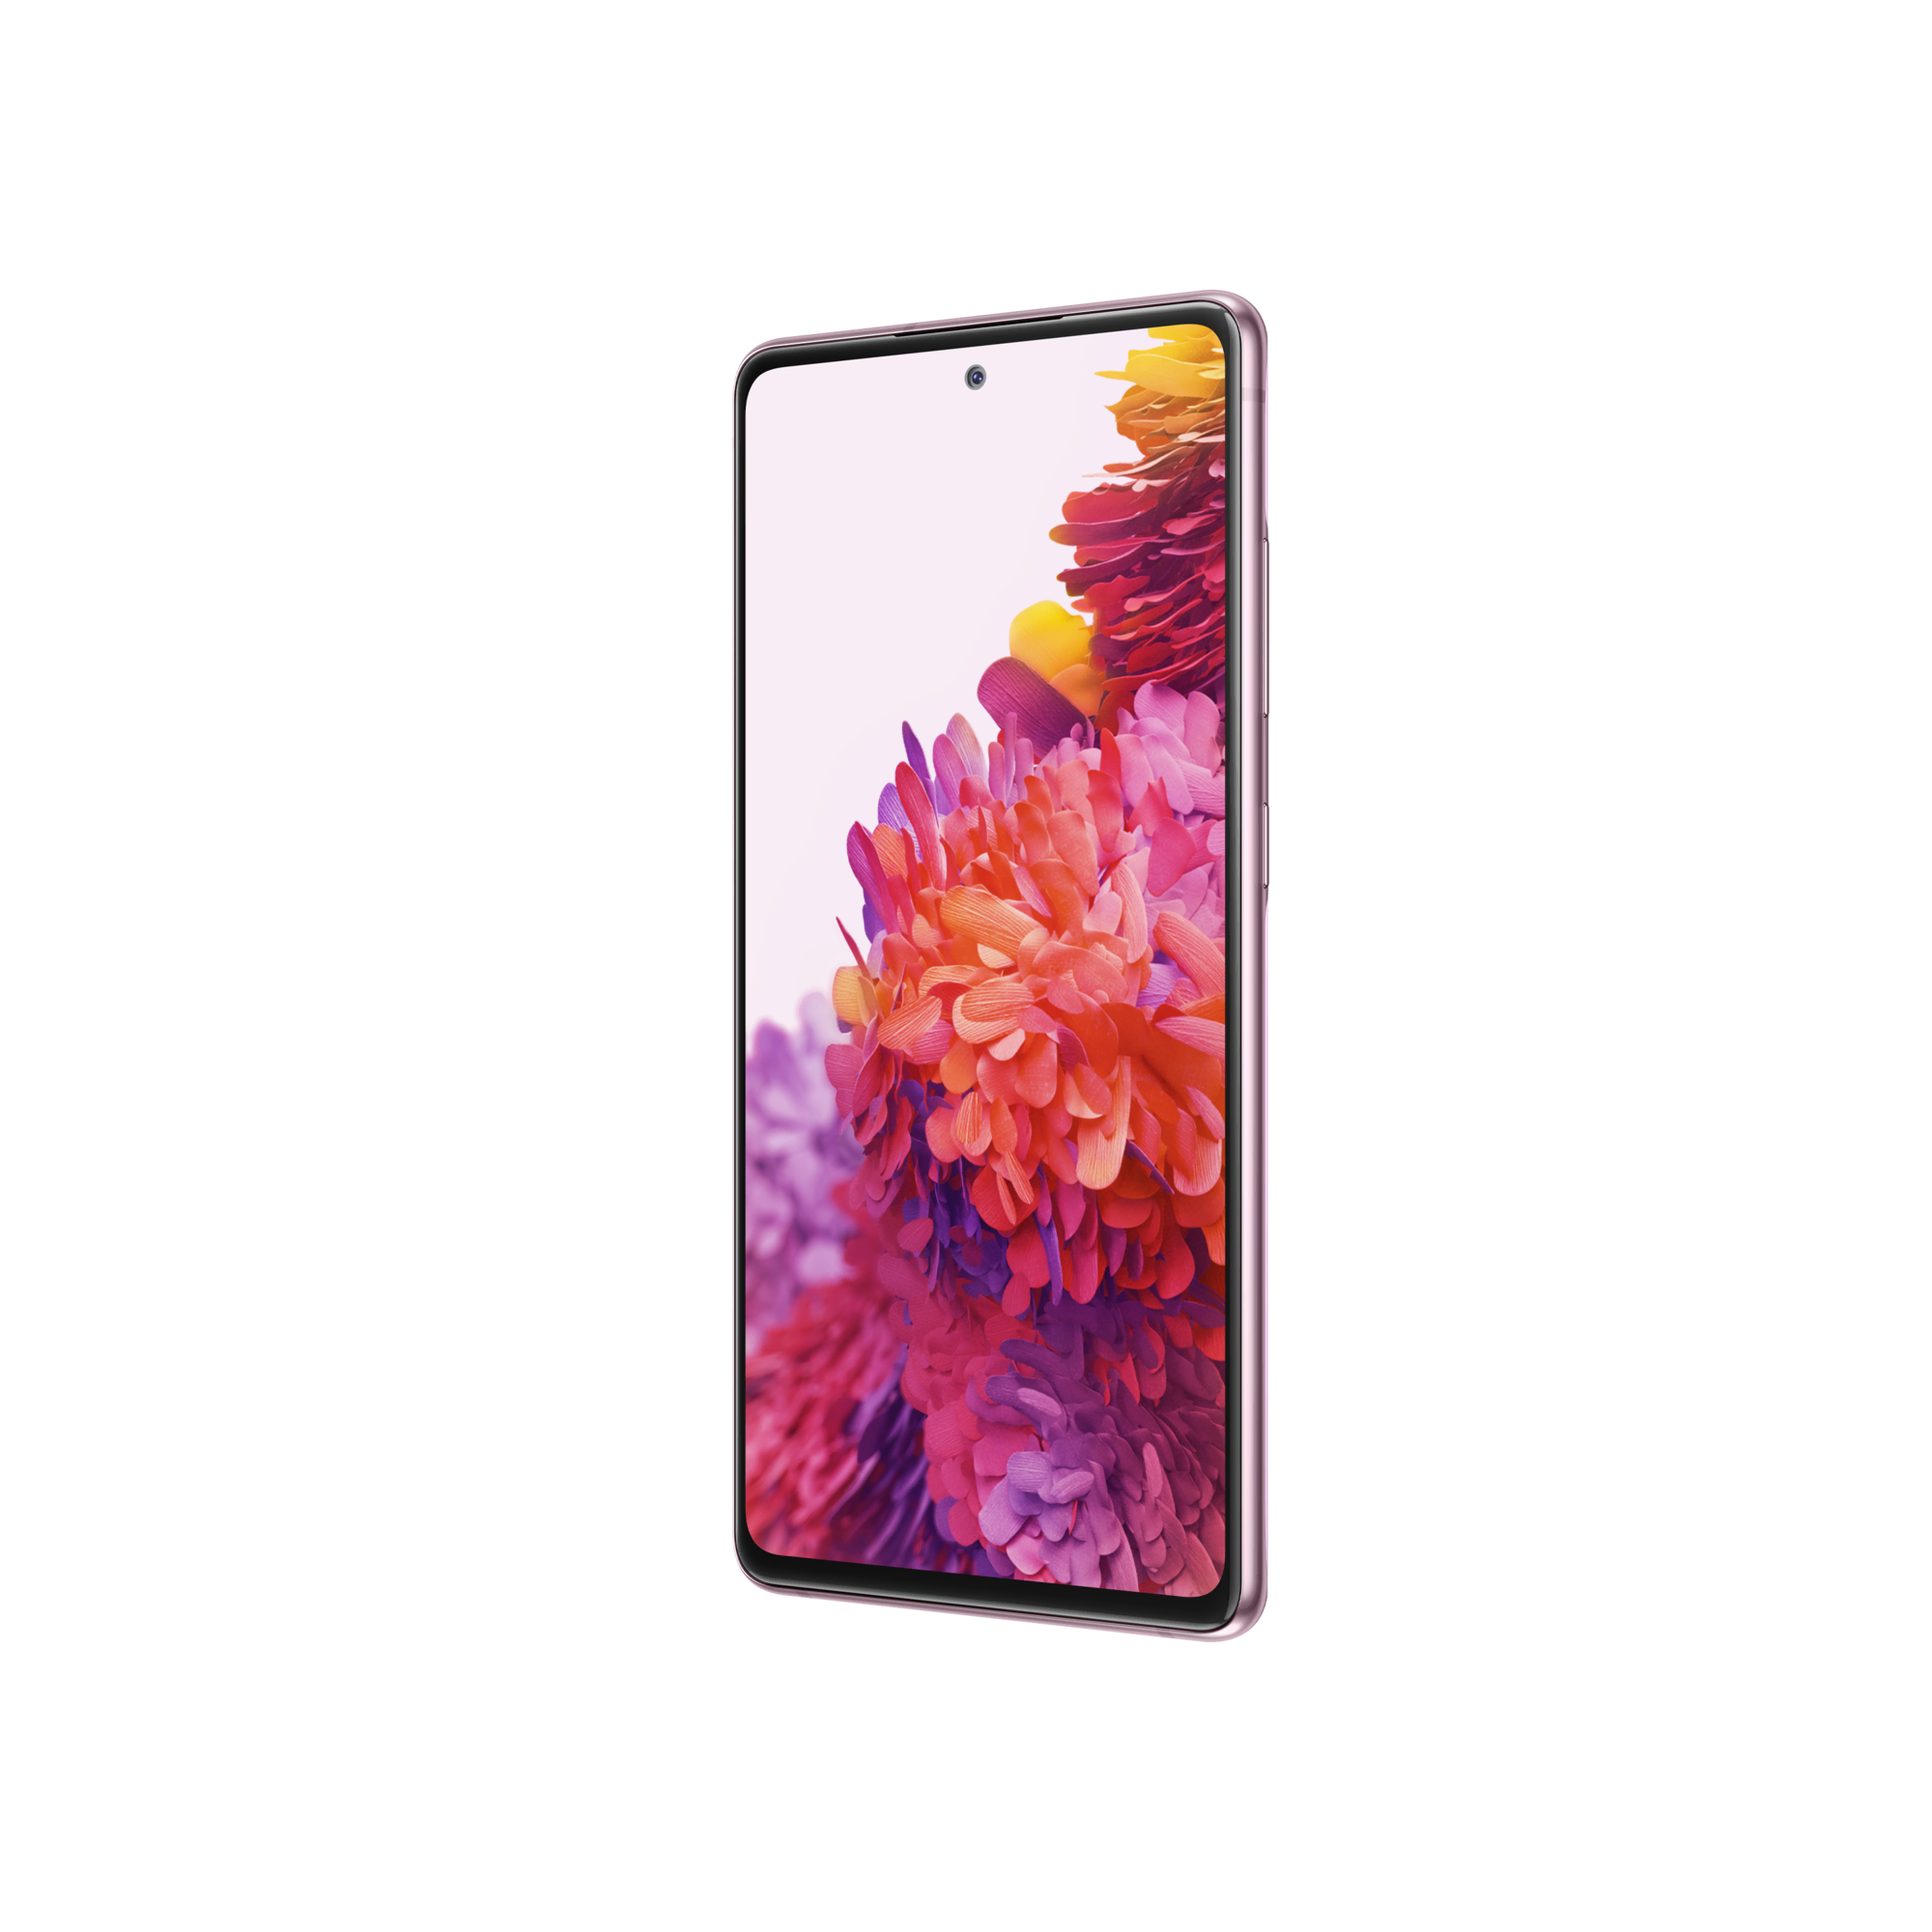 SAMSUNG Galaxy S20 FE 128GB Mor Android Telefon Modelleri